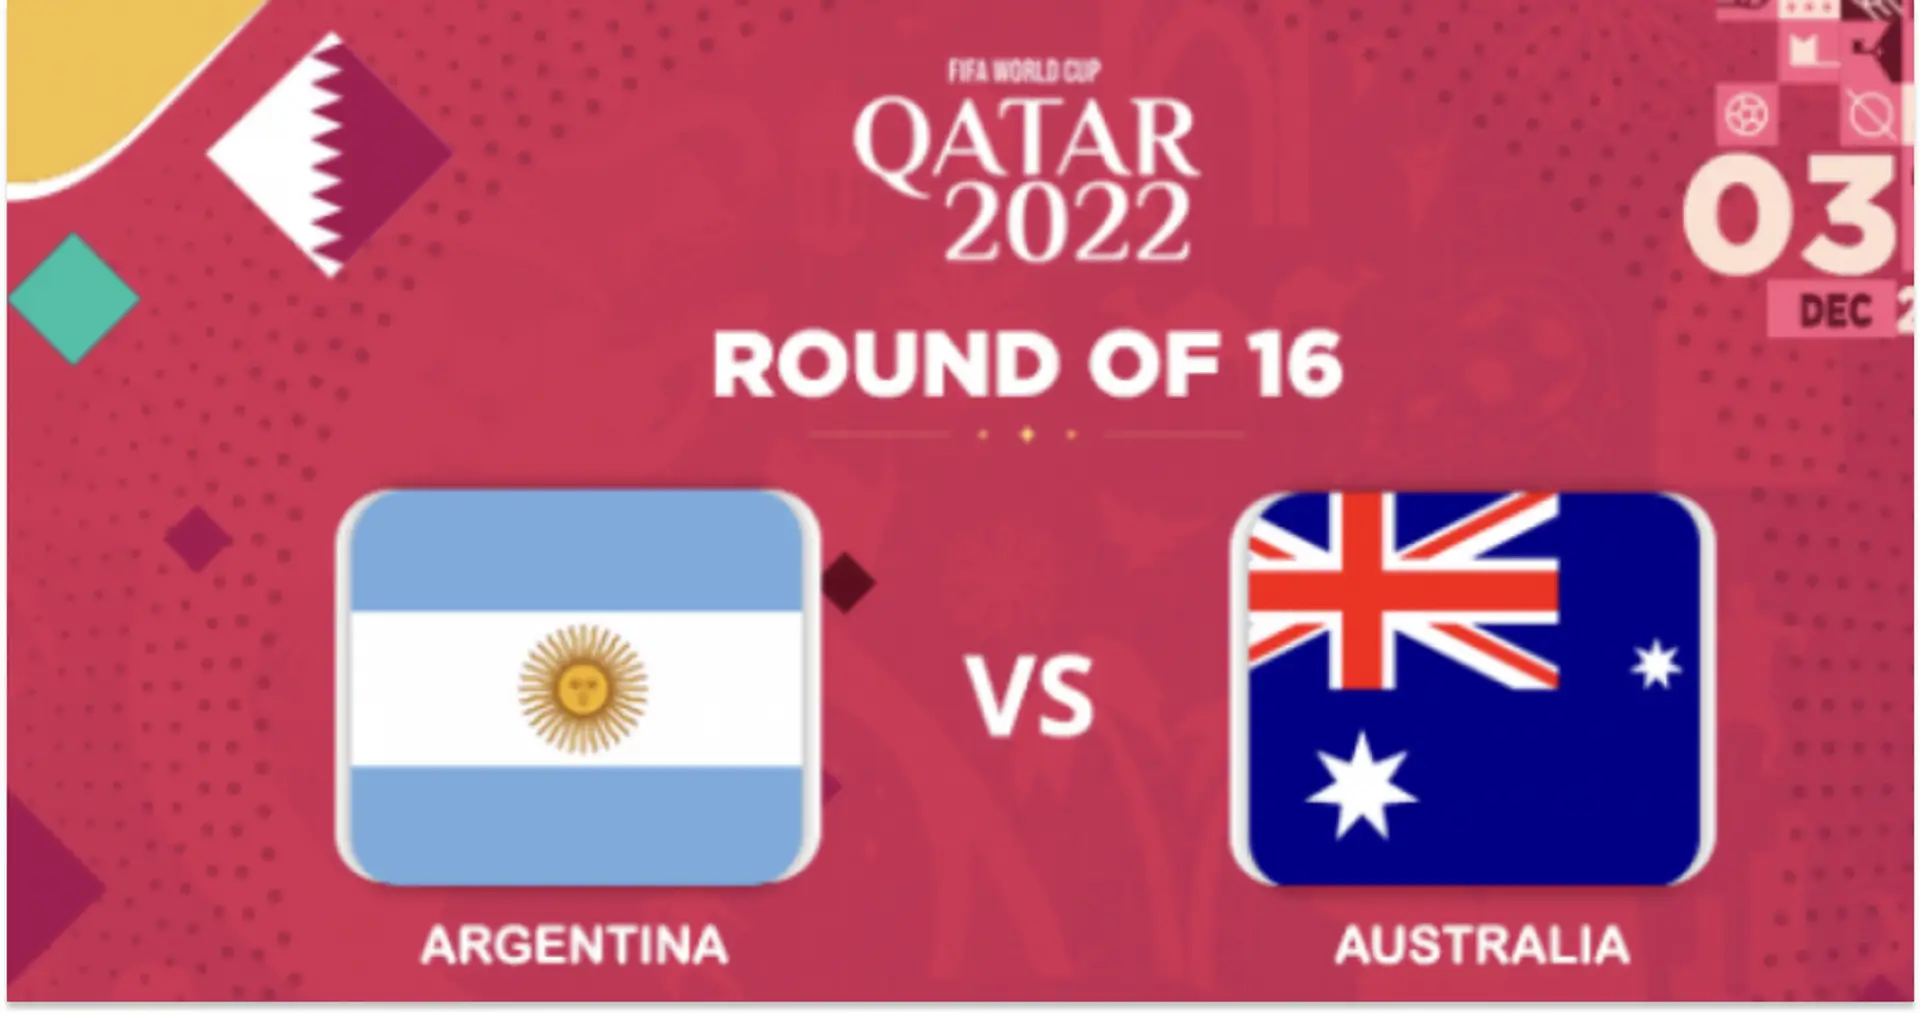 Argentina vs Australia: le formazioni ufficiali delle squadre per la partita della Coppa del Mondo Qatar 2022 